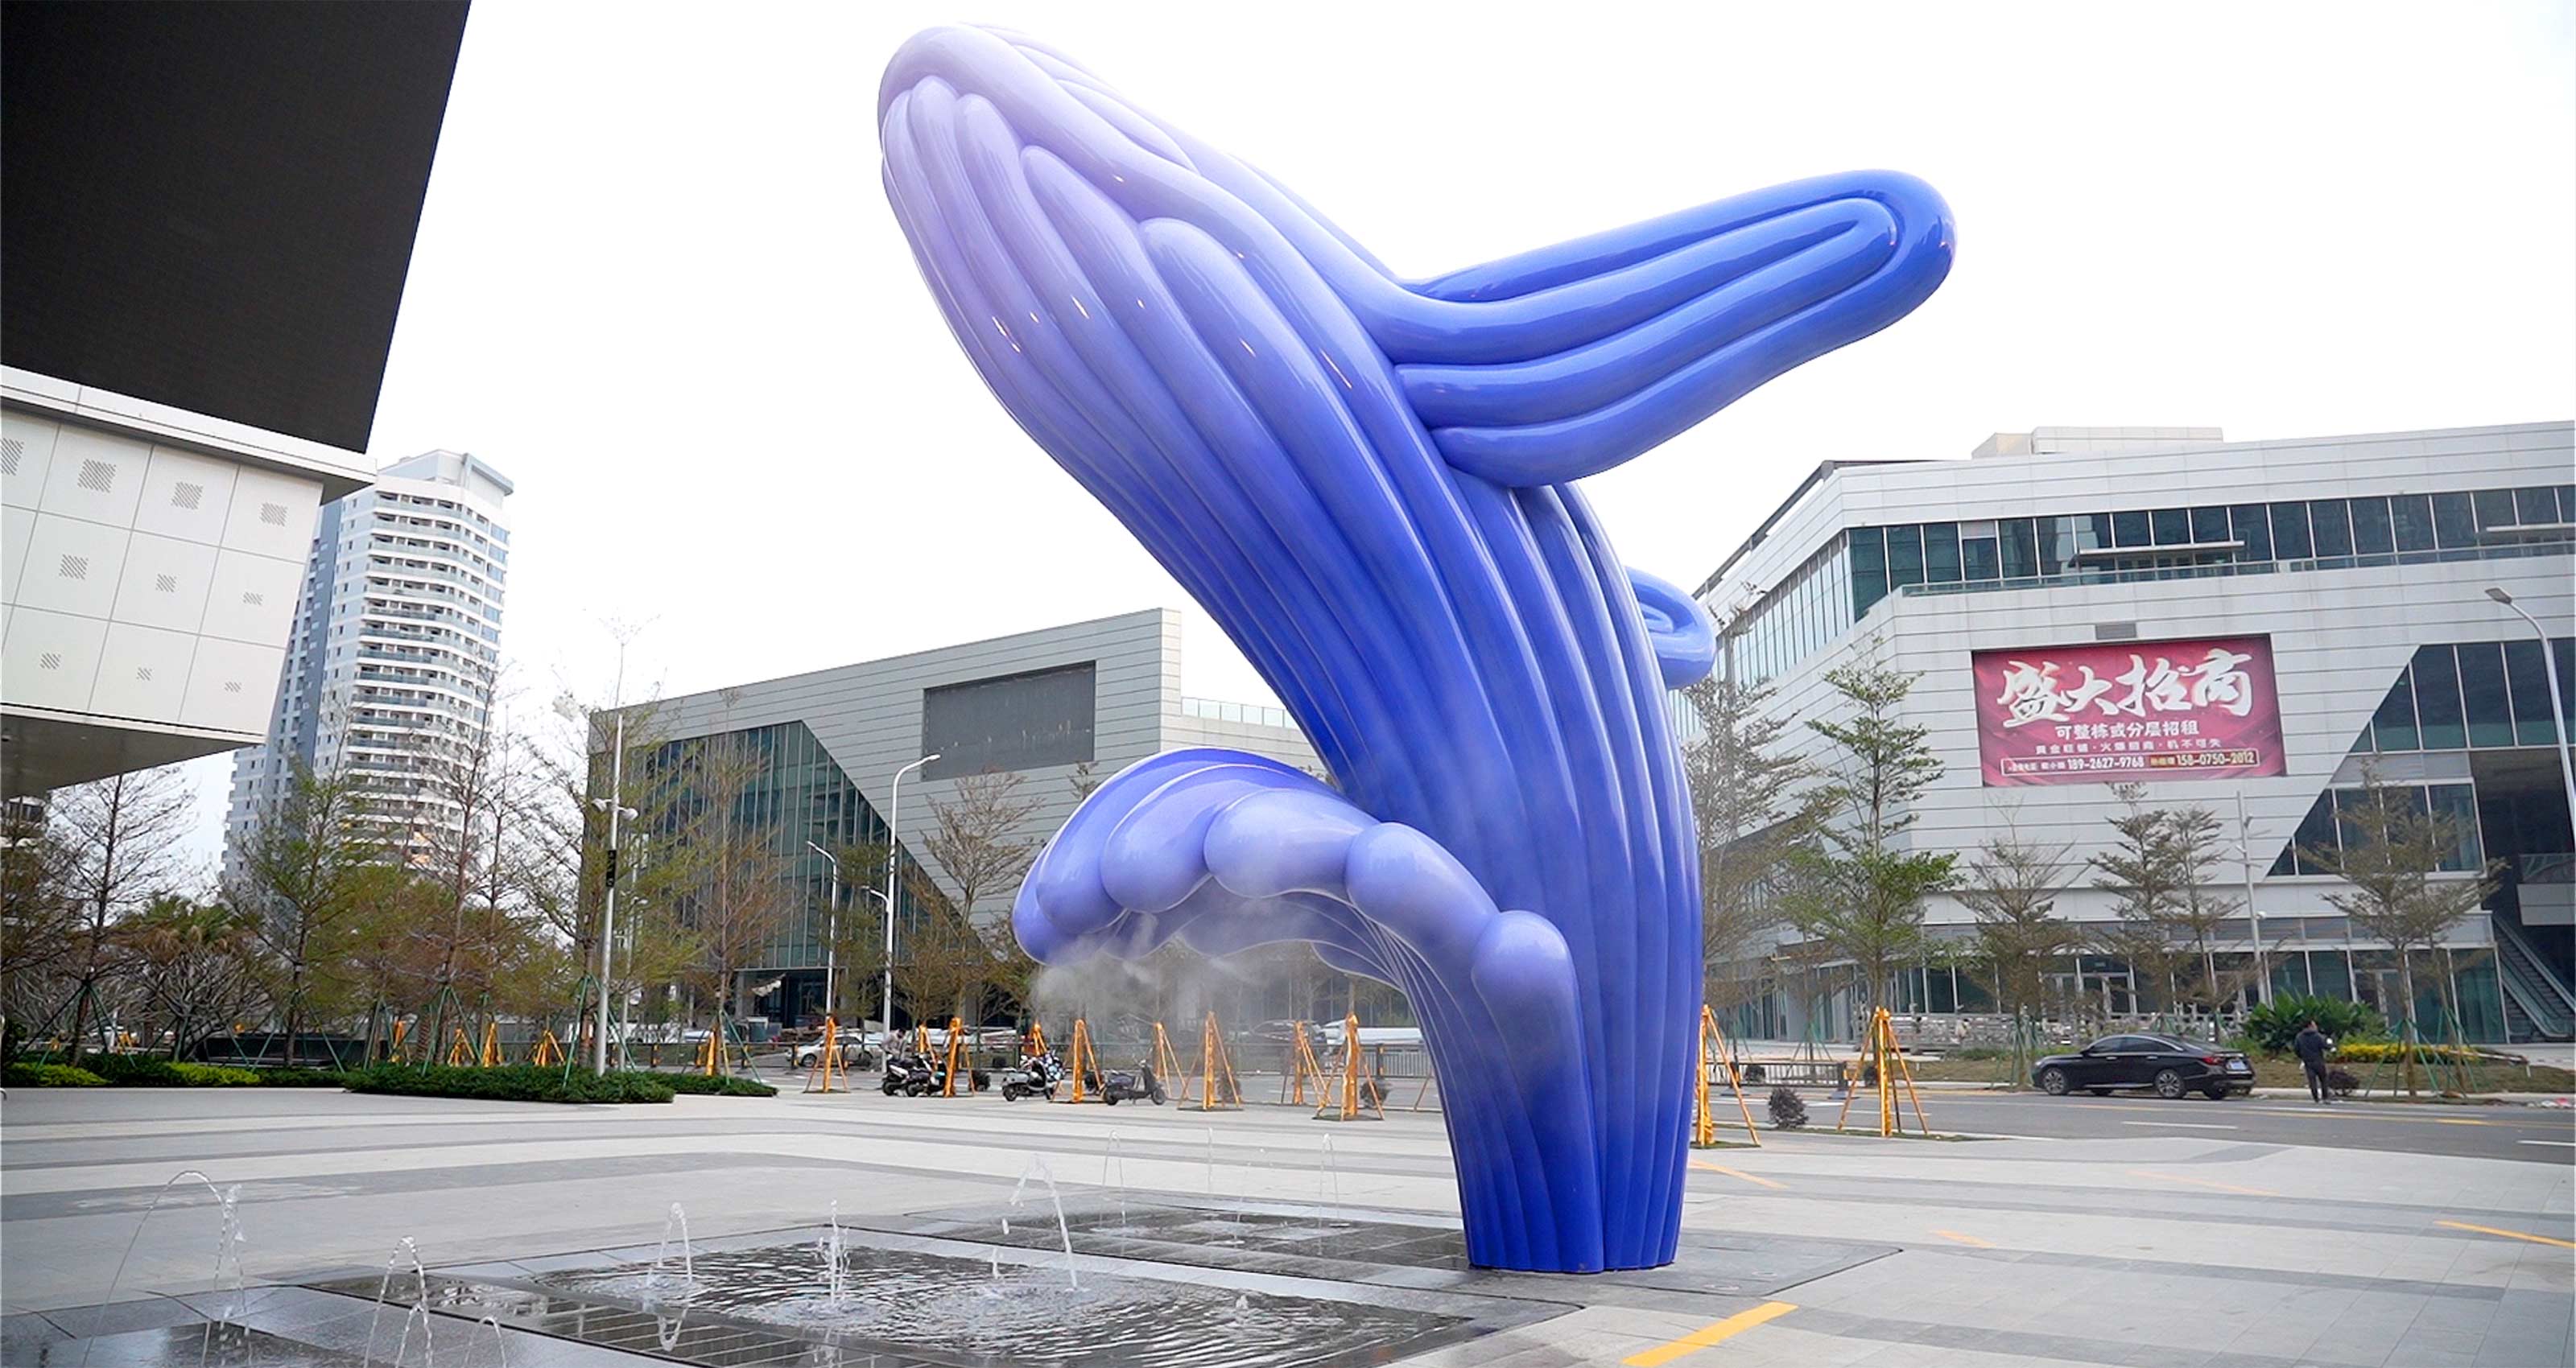 Whale public sculpture final in stainless steel by Ferdi B Dick